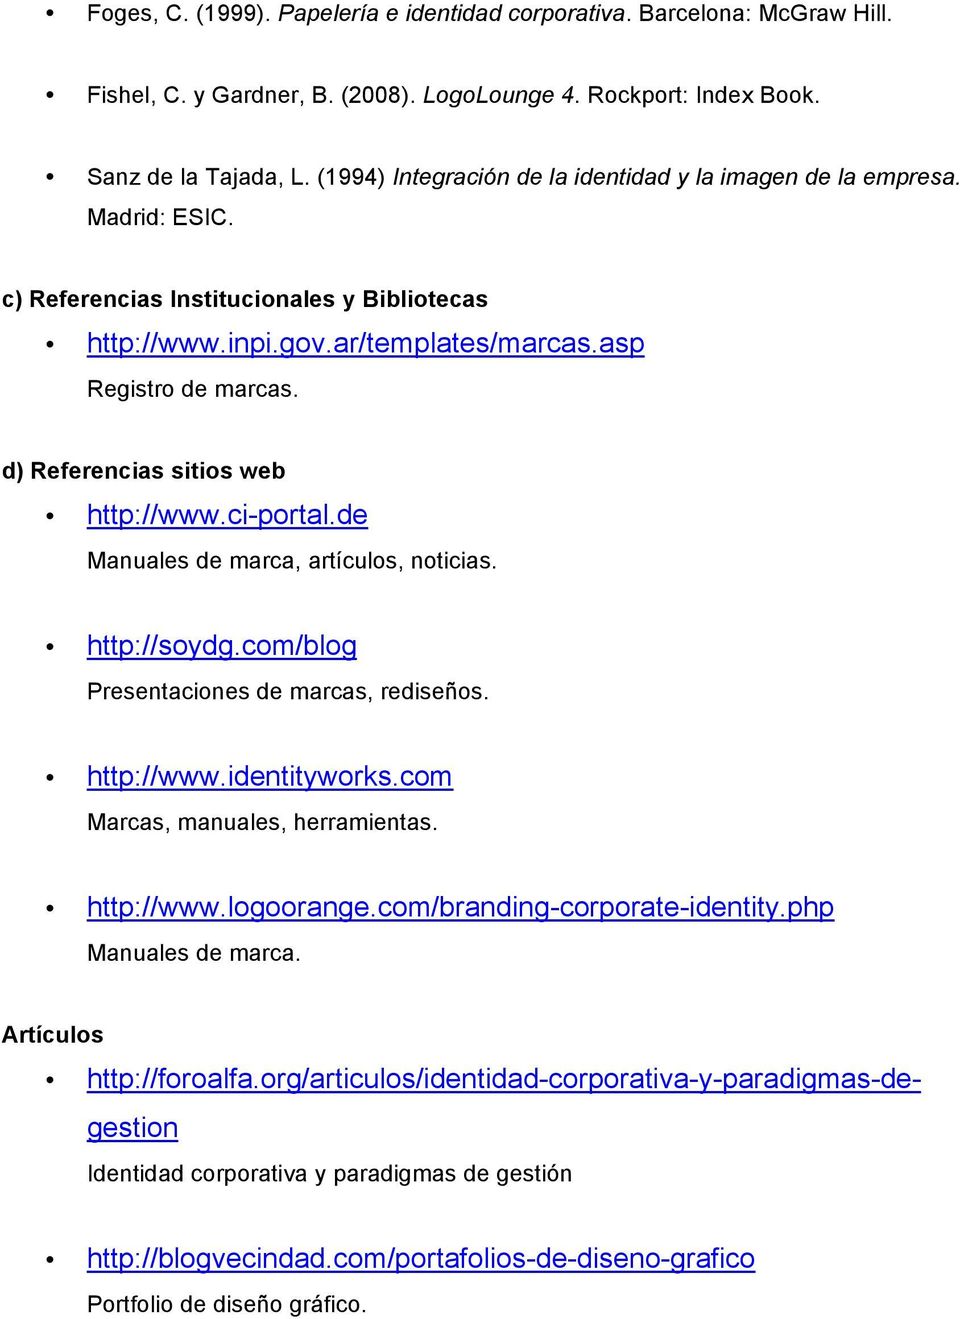 d) Referencias sitios web http://www.ci-portal.de Manuales de marca, artículos, noticias. http://soydg.com/blog Presentaciones de marcas, rediseños. http://www.identityworks.